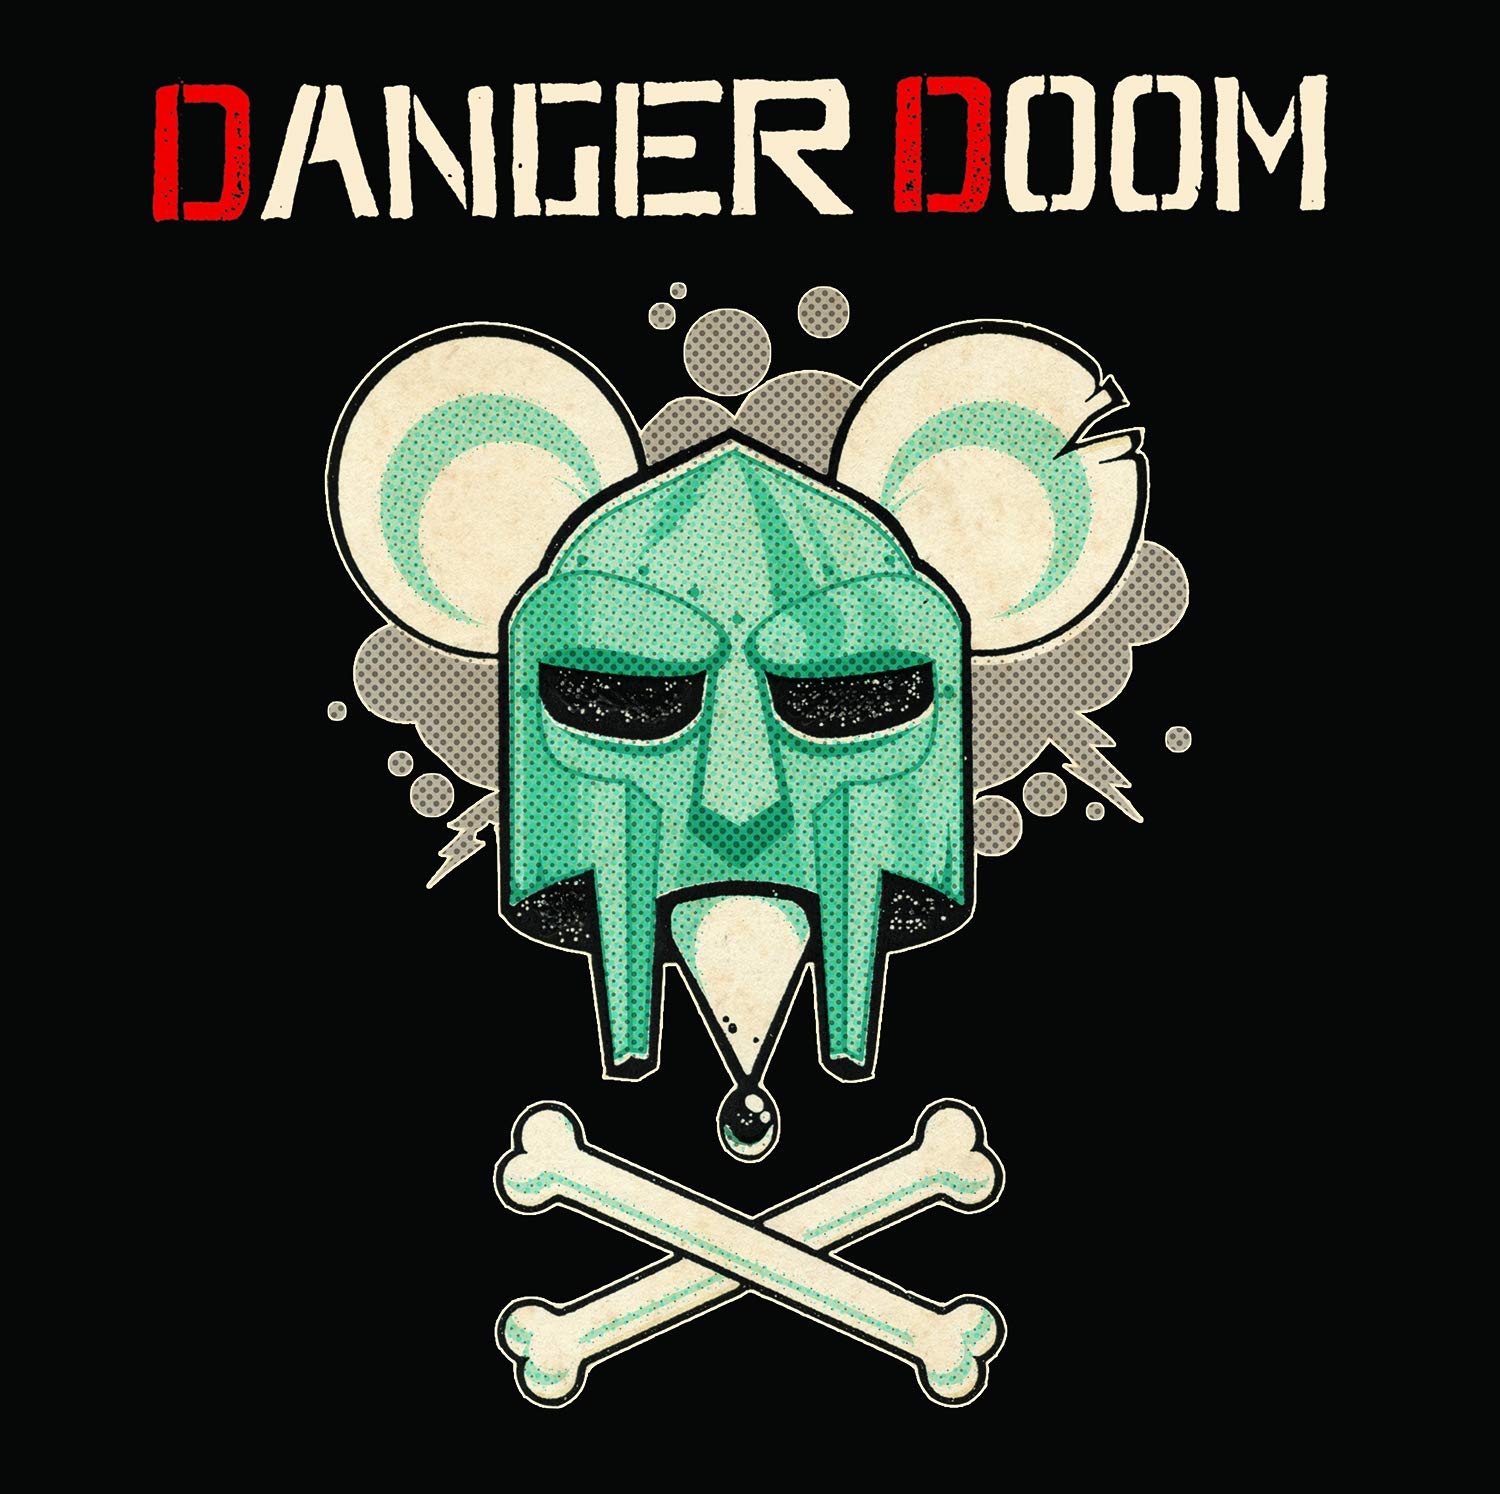 Dangerdoom - The Mouse and the Mask pour la Heart & Soul par Vocation